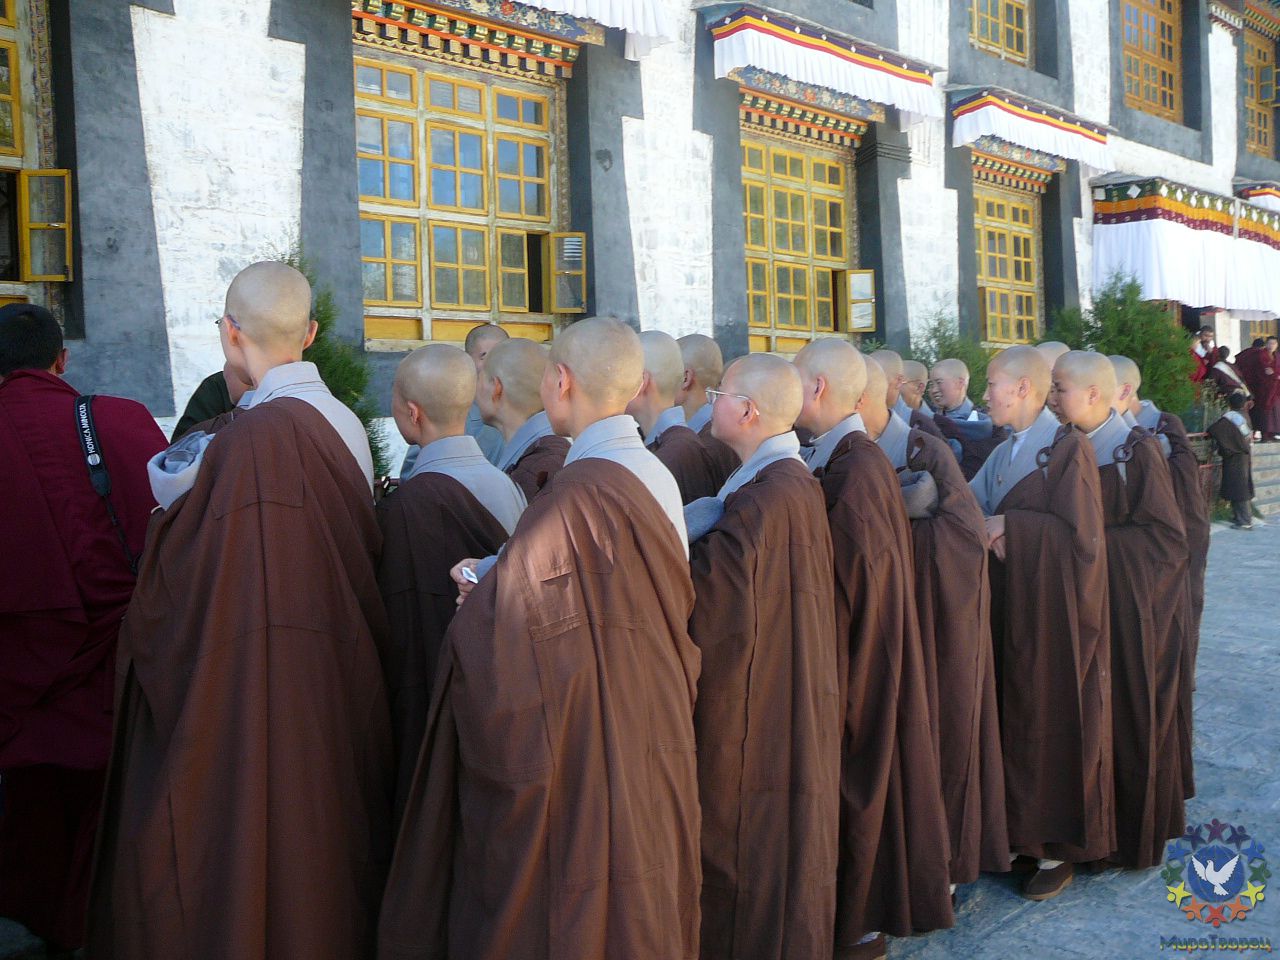 Монахи - Тибет 2006. Фотовоспоминание 5 лет спустя.